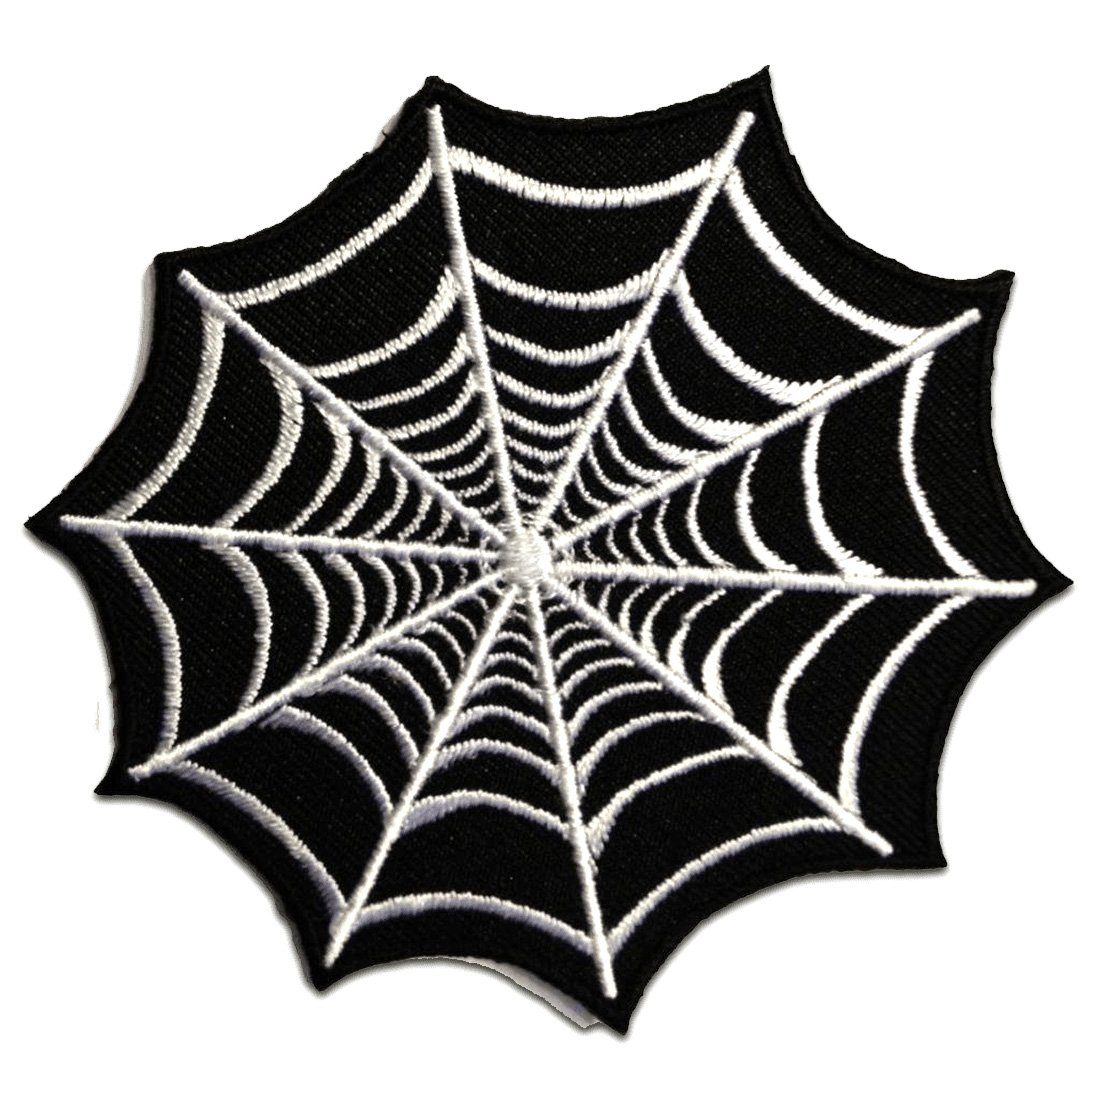 Patches Aufbügeln 8,5 x 8,5 cm Aufnäher / Bügelbild Spinnennetz schwarz 